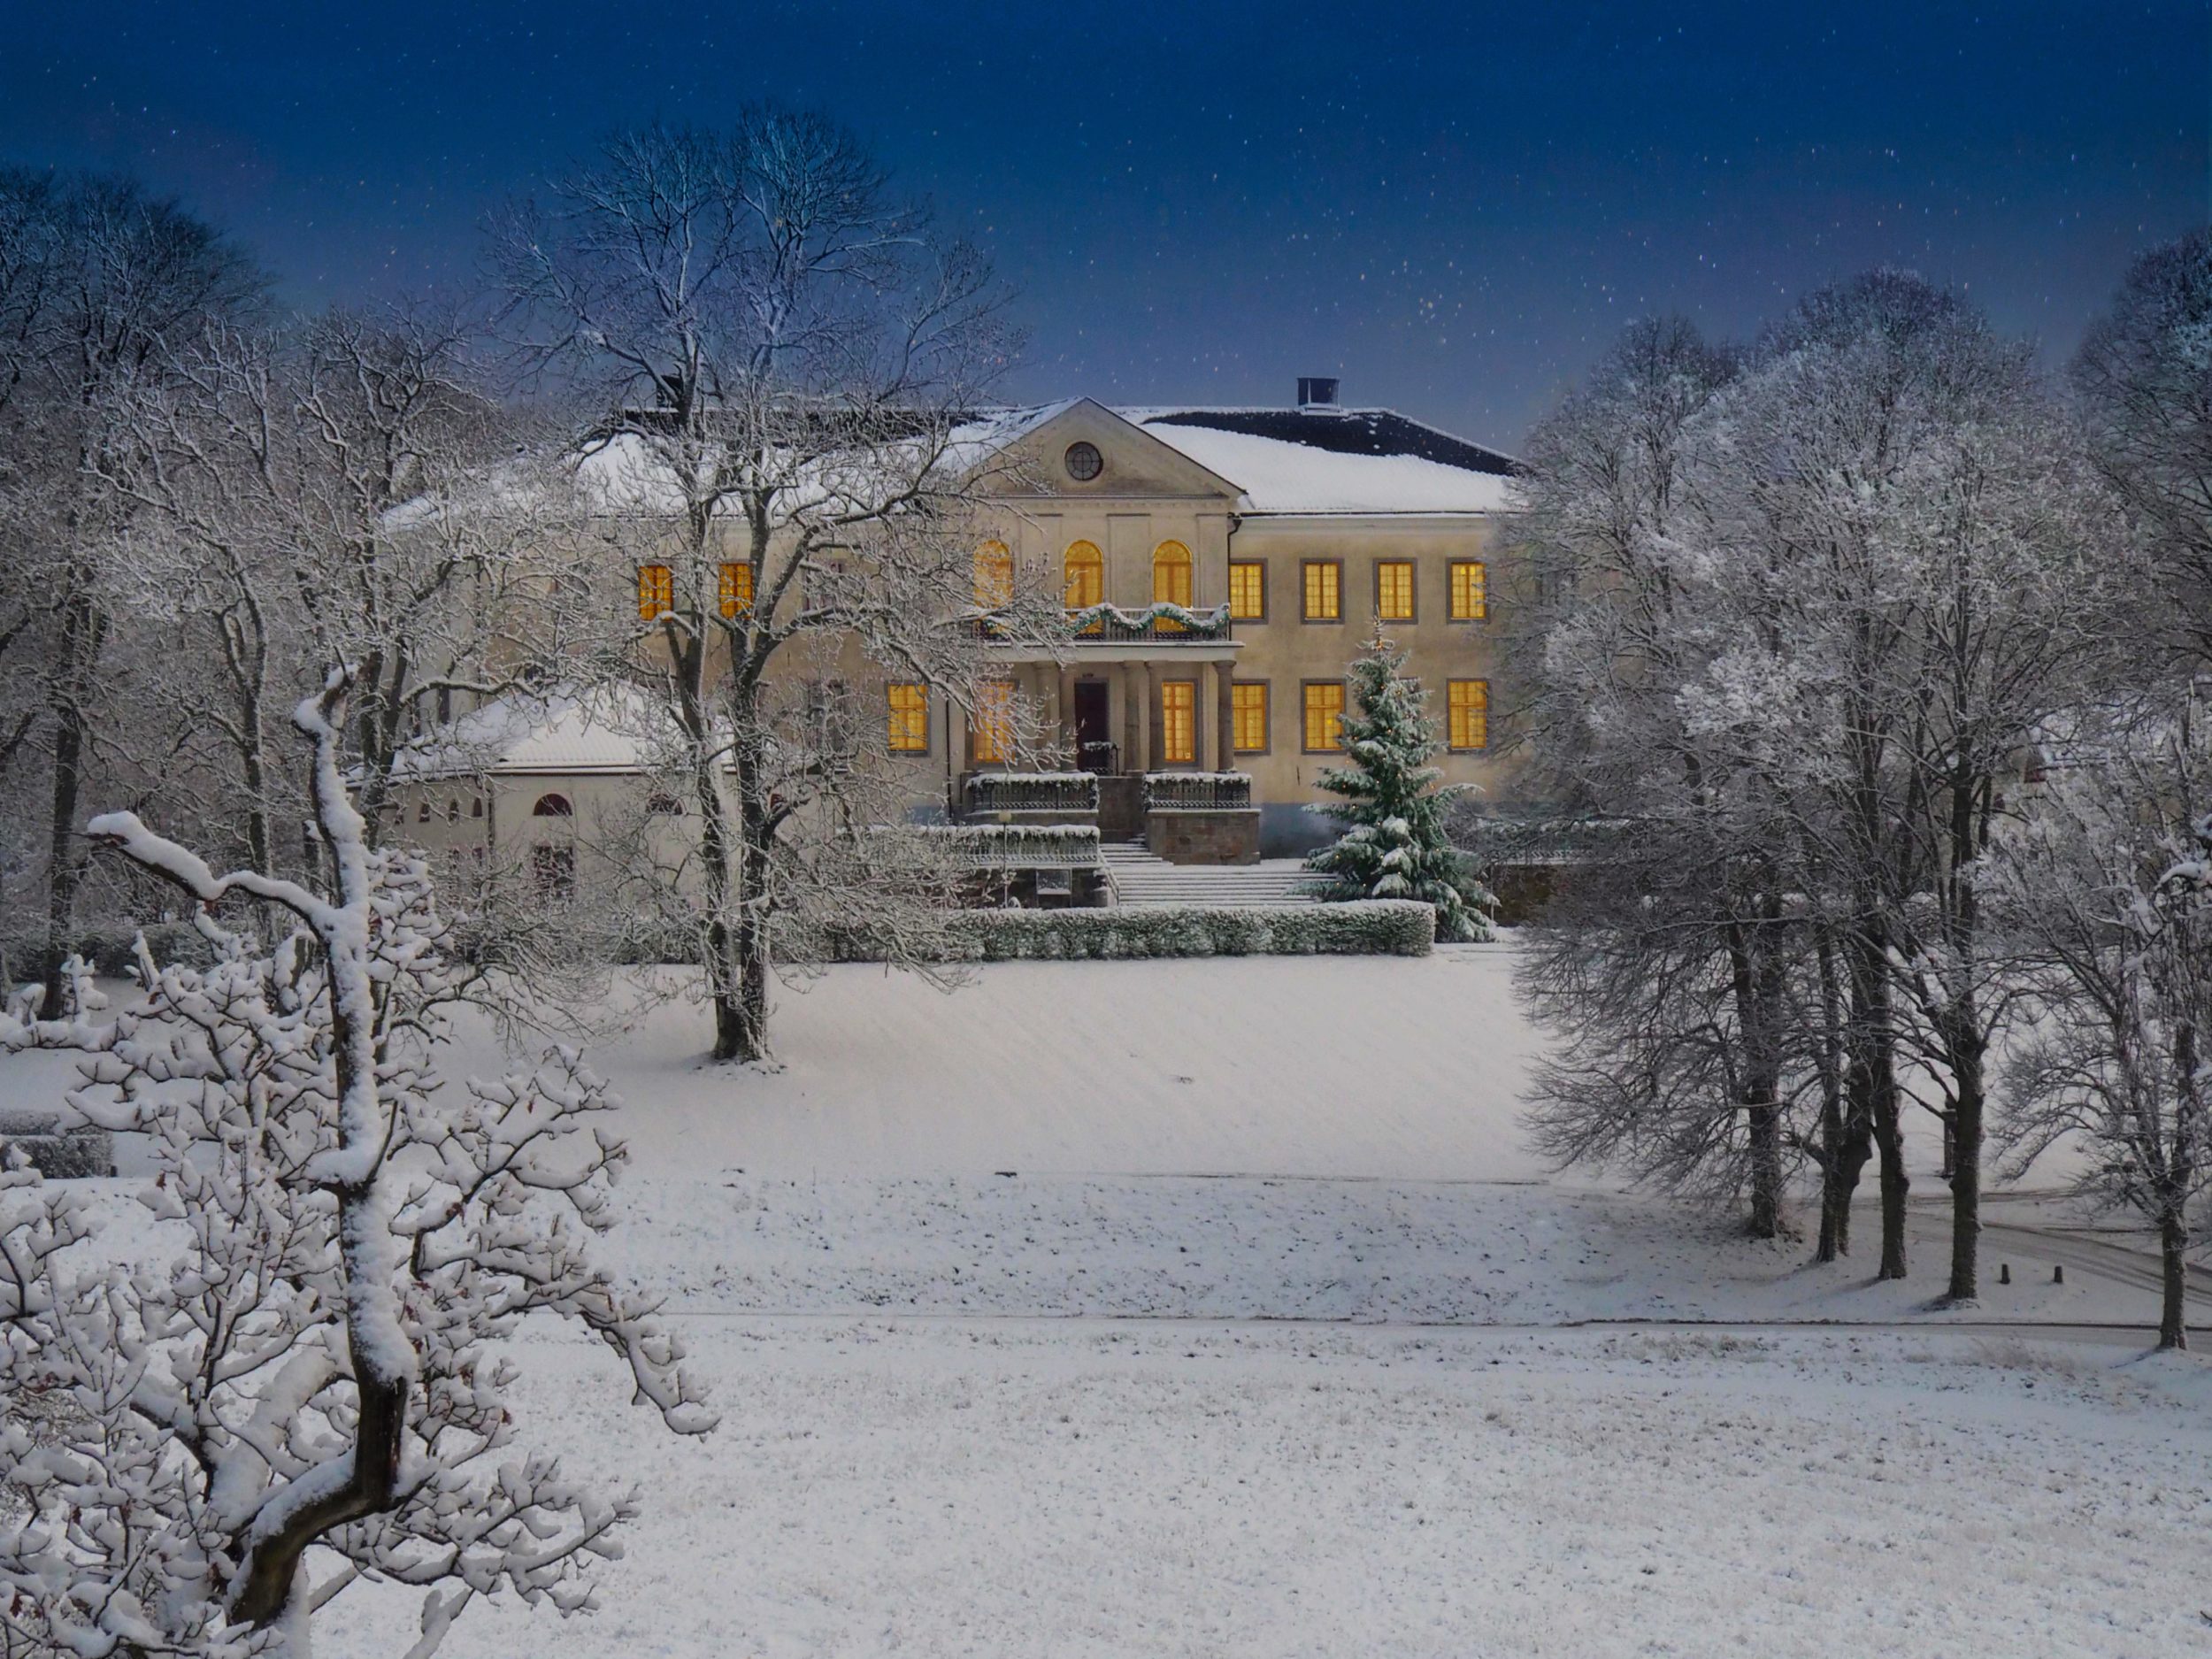 Nääs slott i skymning i snölandskap